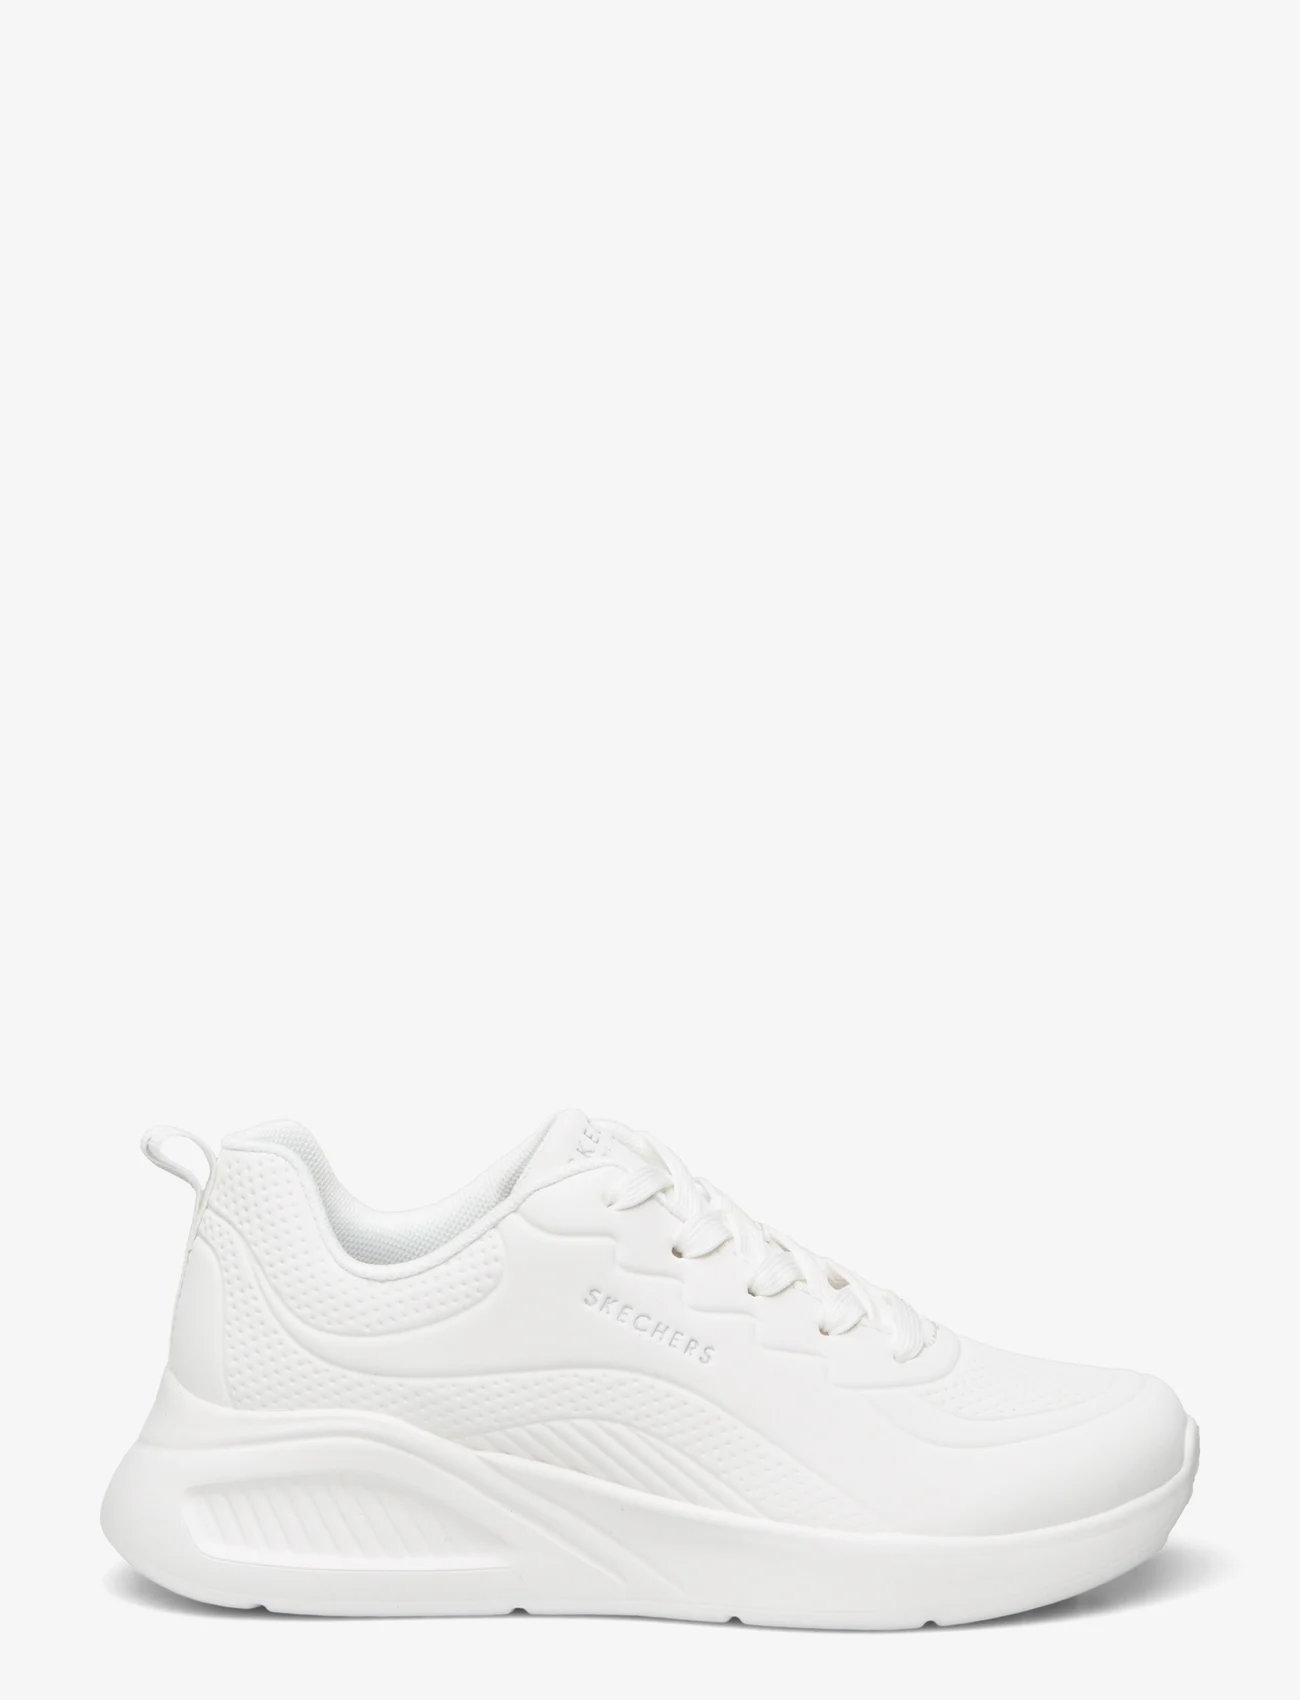 Skechers - Womens Uno Lite - Lighter One - sneakers med lavt skaft - wht white - 1